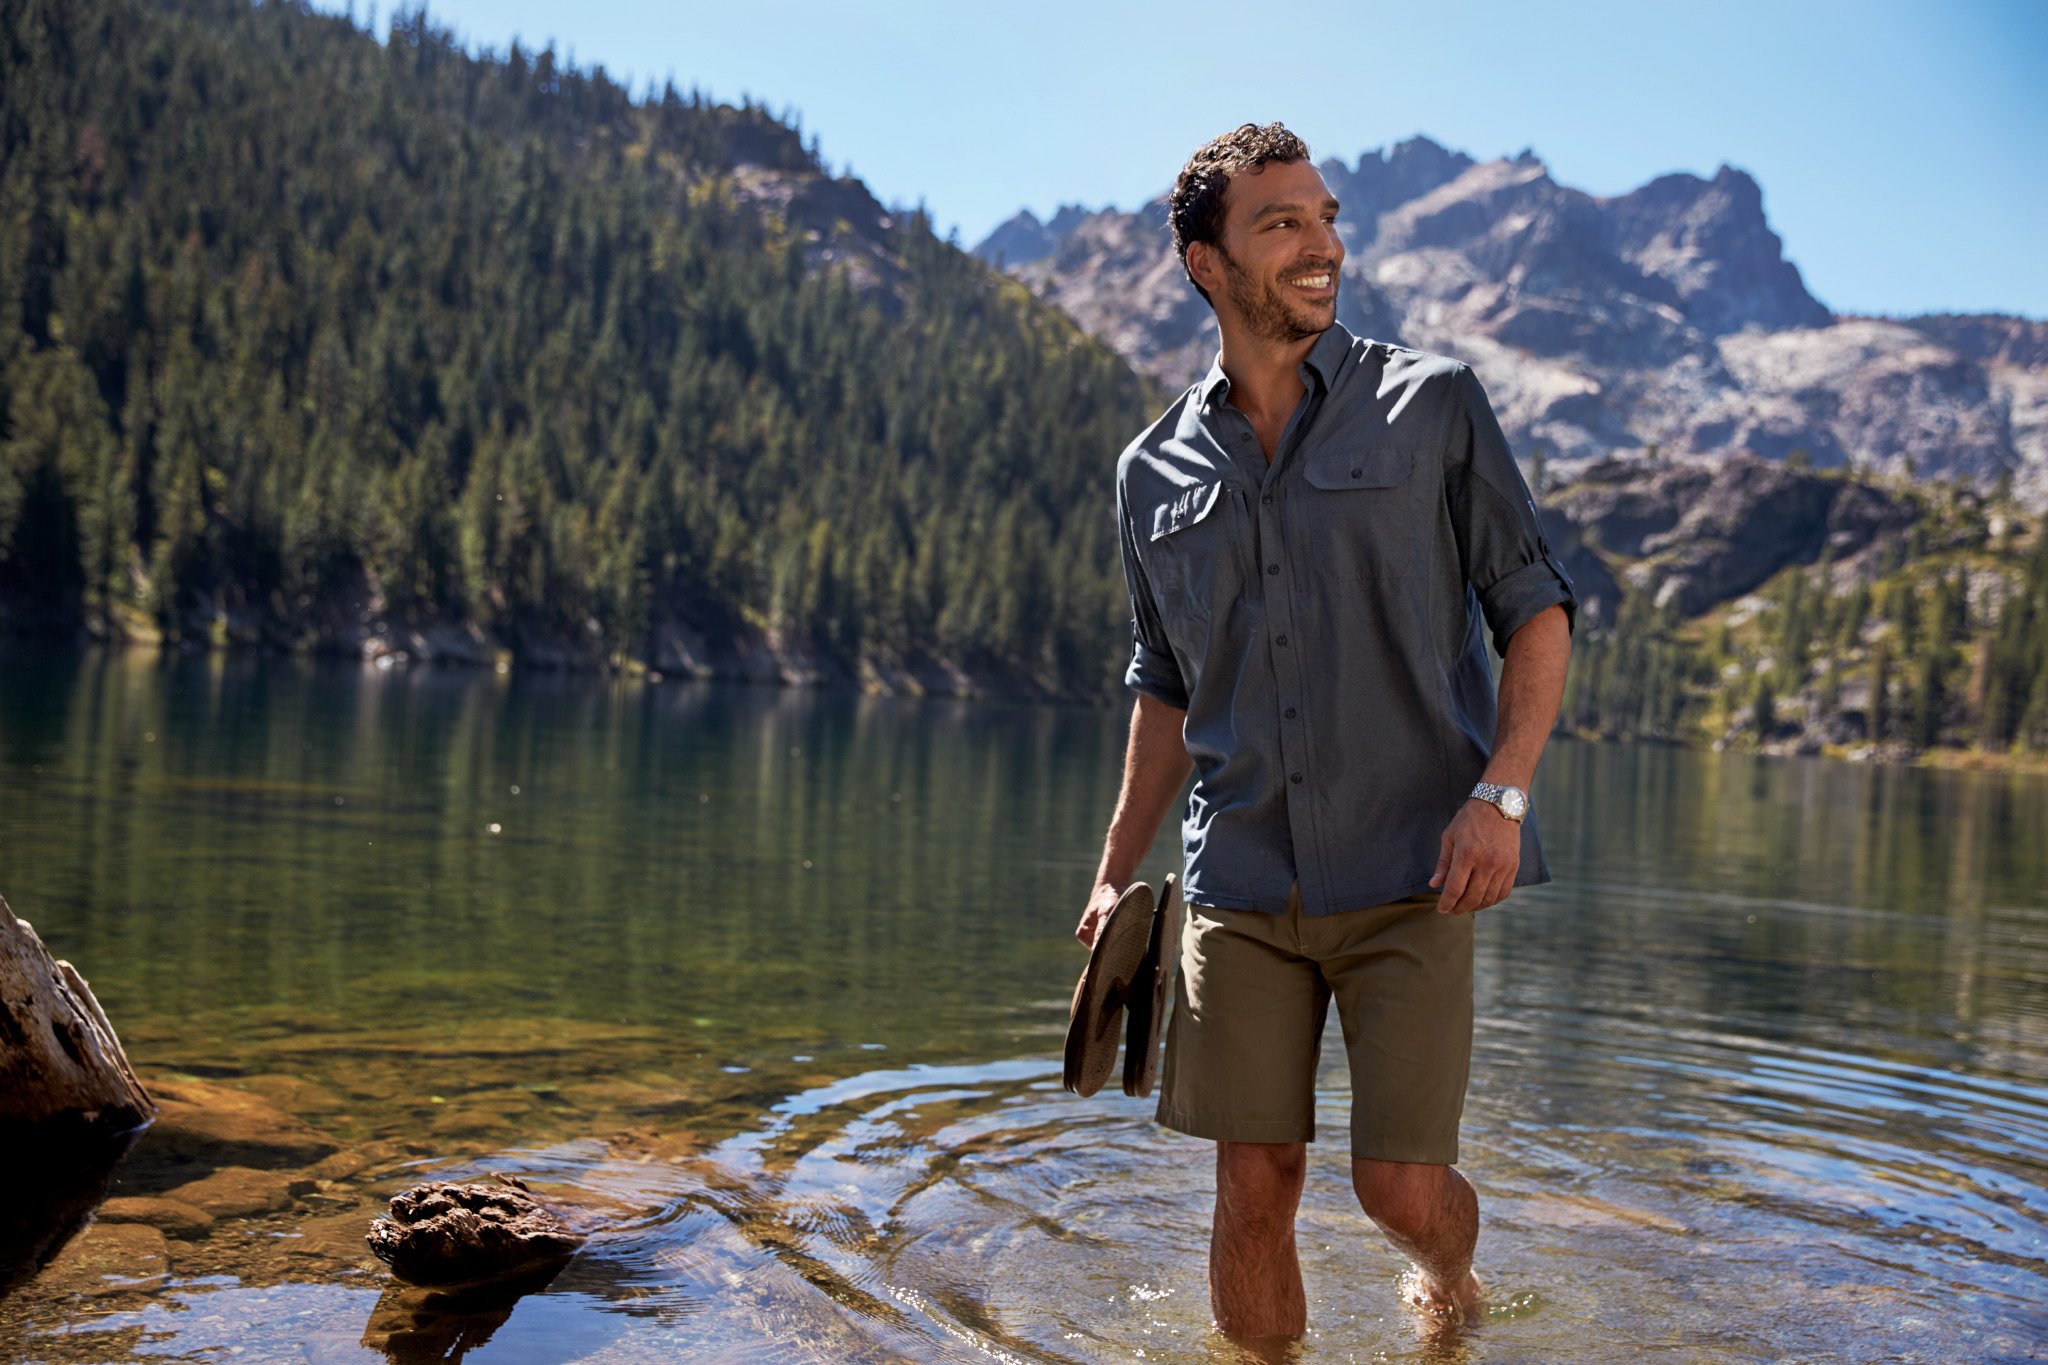 Camping men. Mountain man одежда. Образ для кемпинга мужской. Мужской стиль одежды Summer. Hiker man.